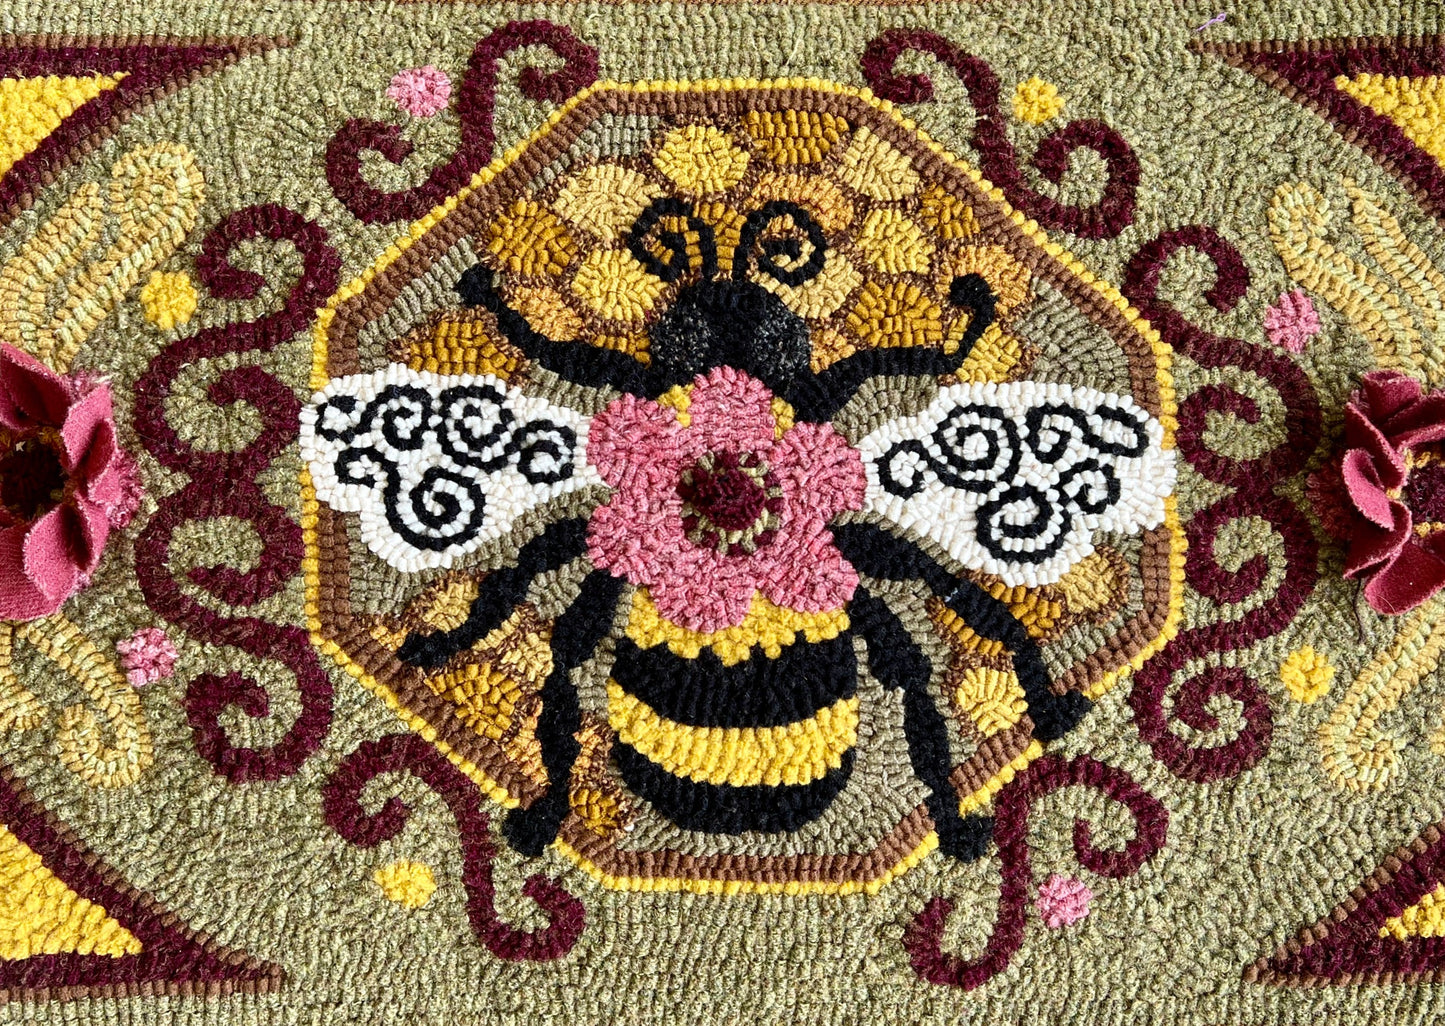 Bumblebee II- Rug Hooking PDF Digital Download Pattern, By Orphaned Wool